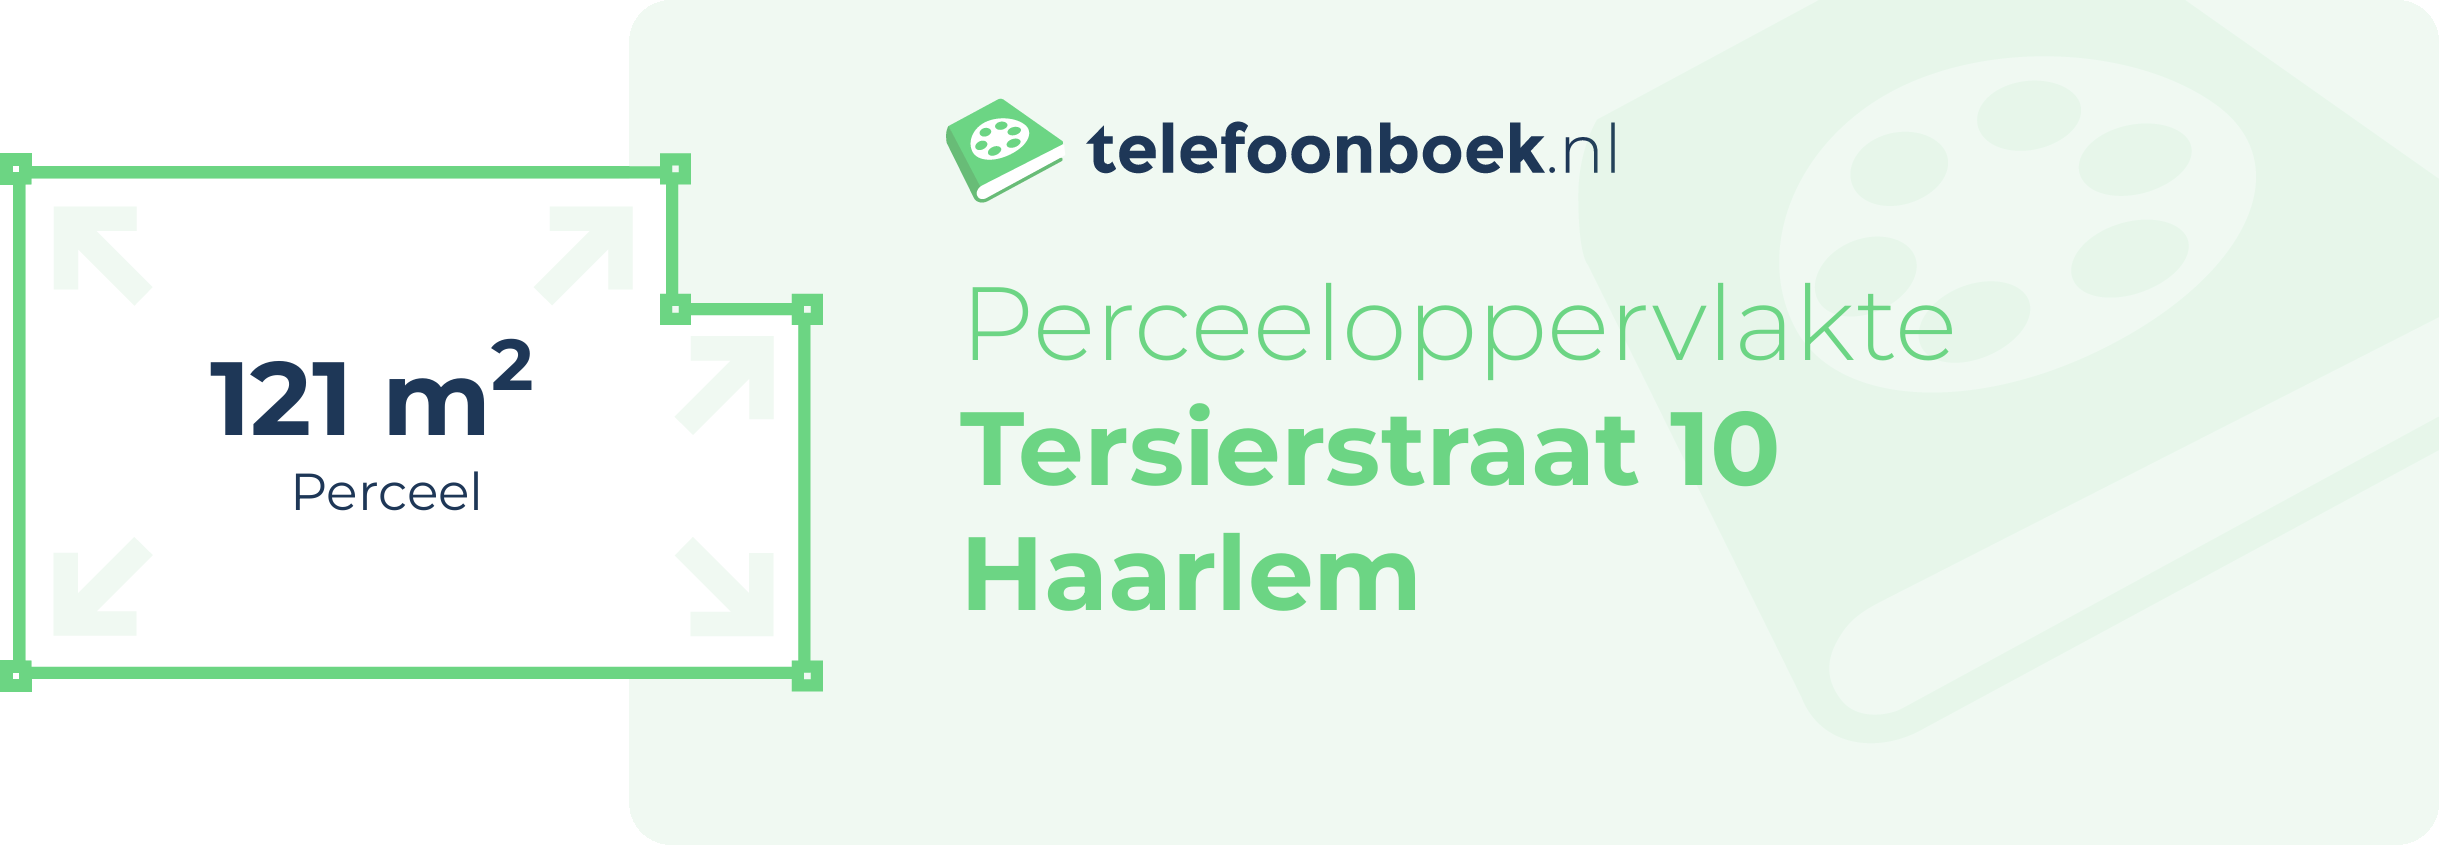 Perceeloppervlakte Tersierstraat 10 Haarlem